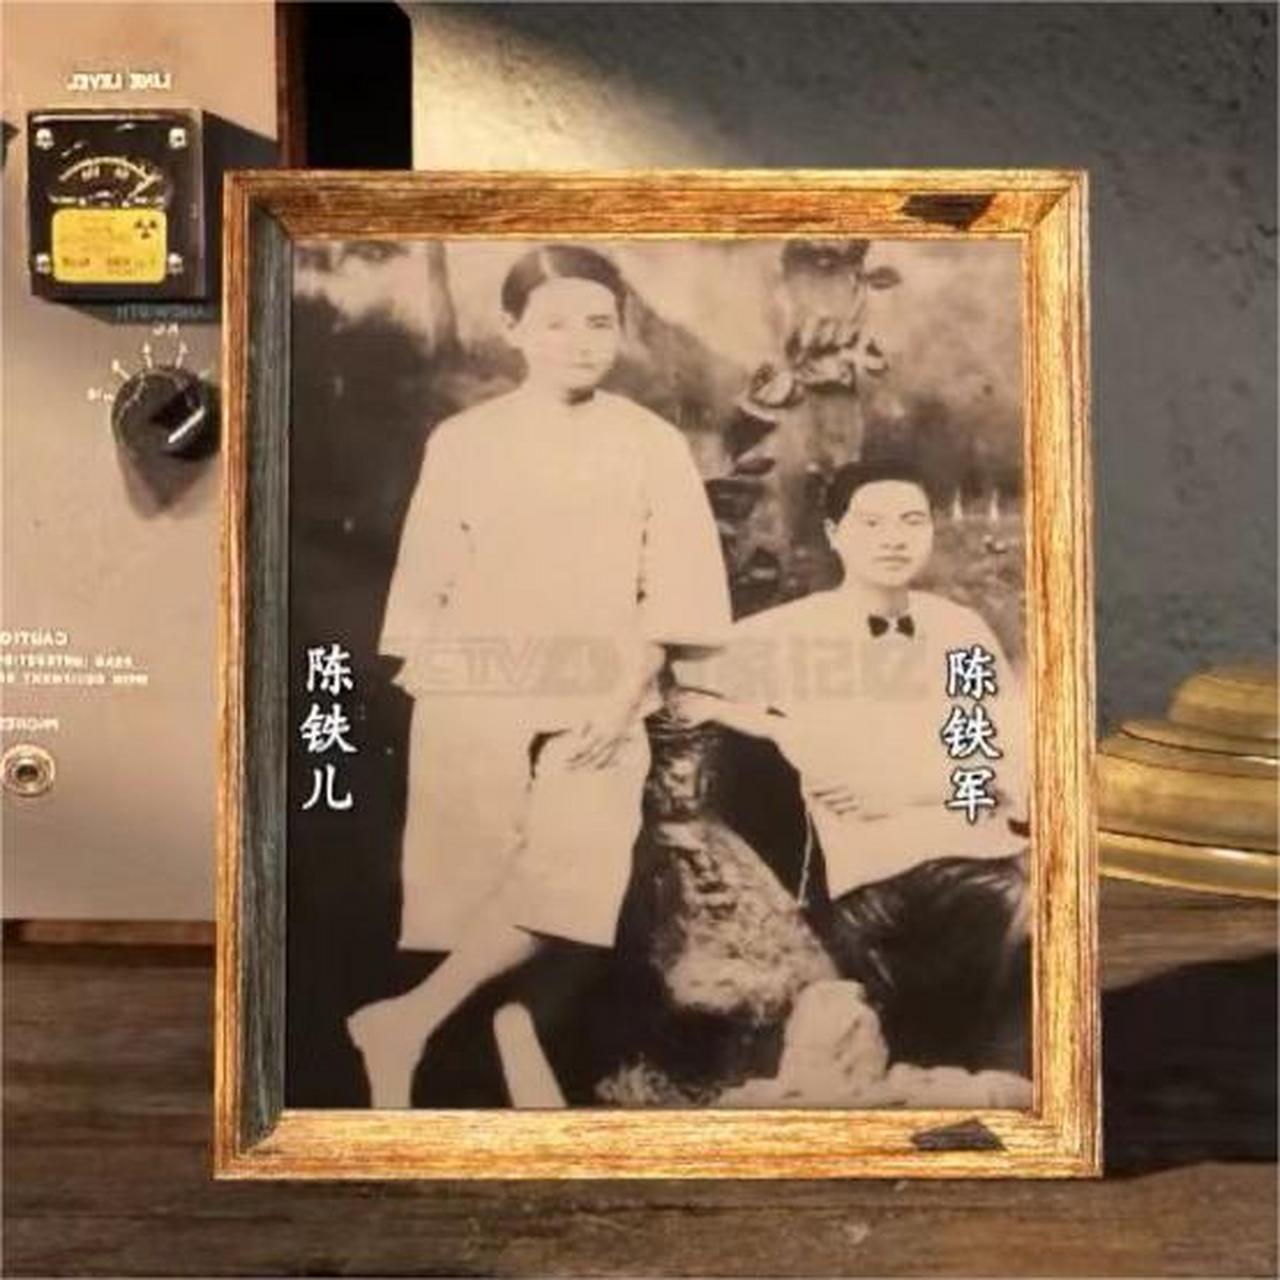 广州红花岗刑场图片